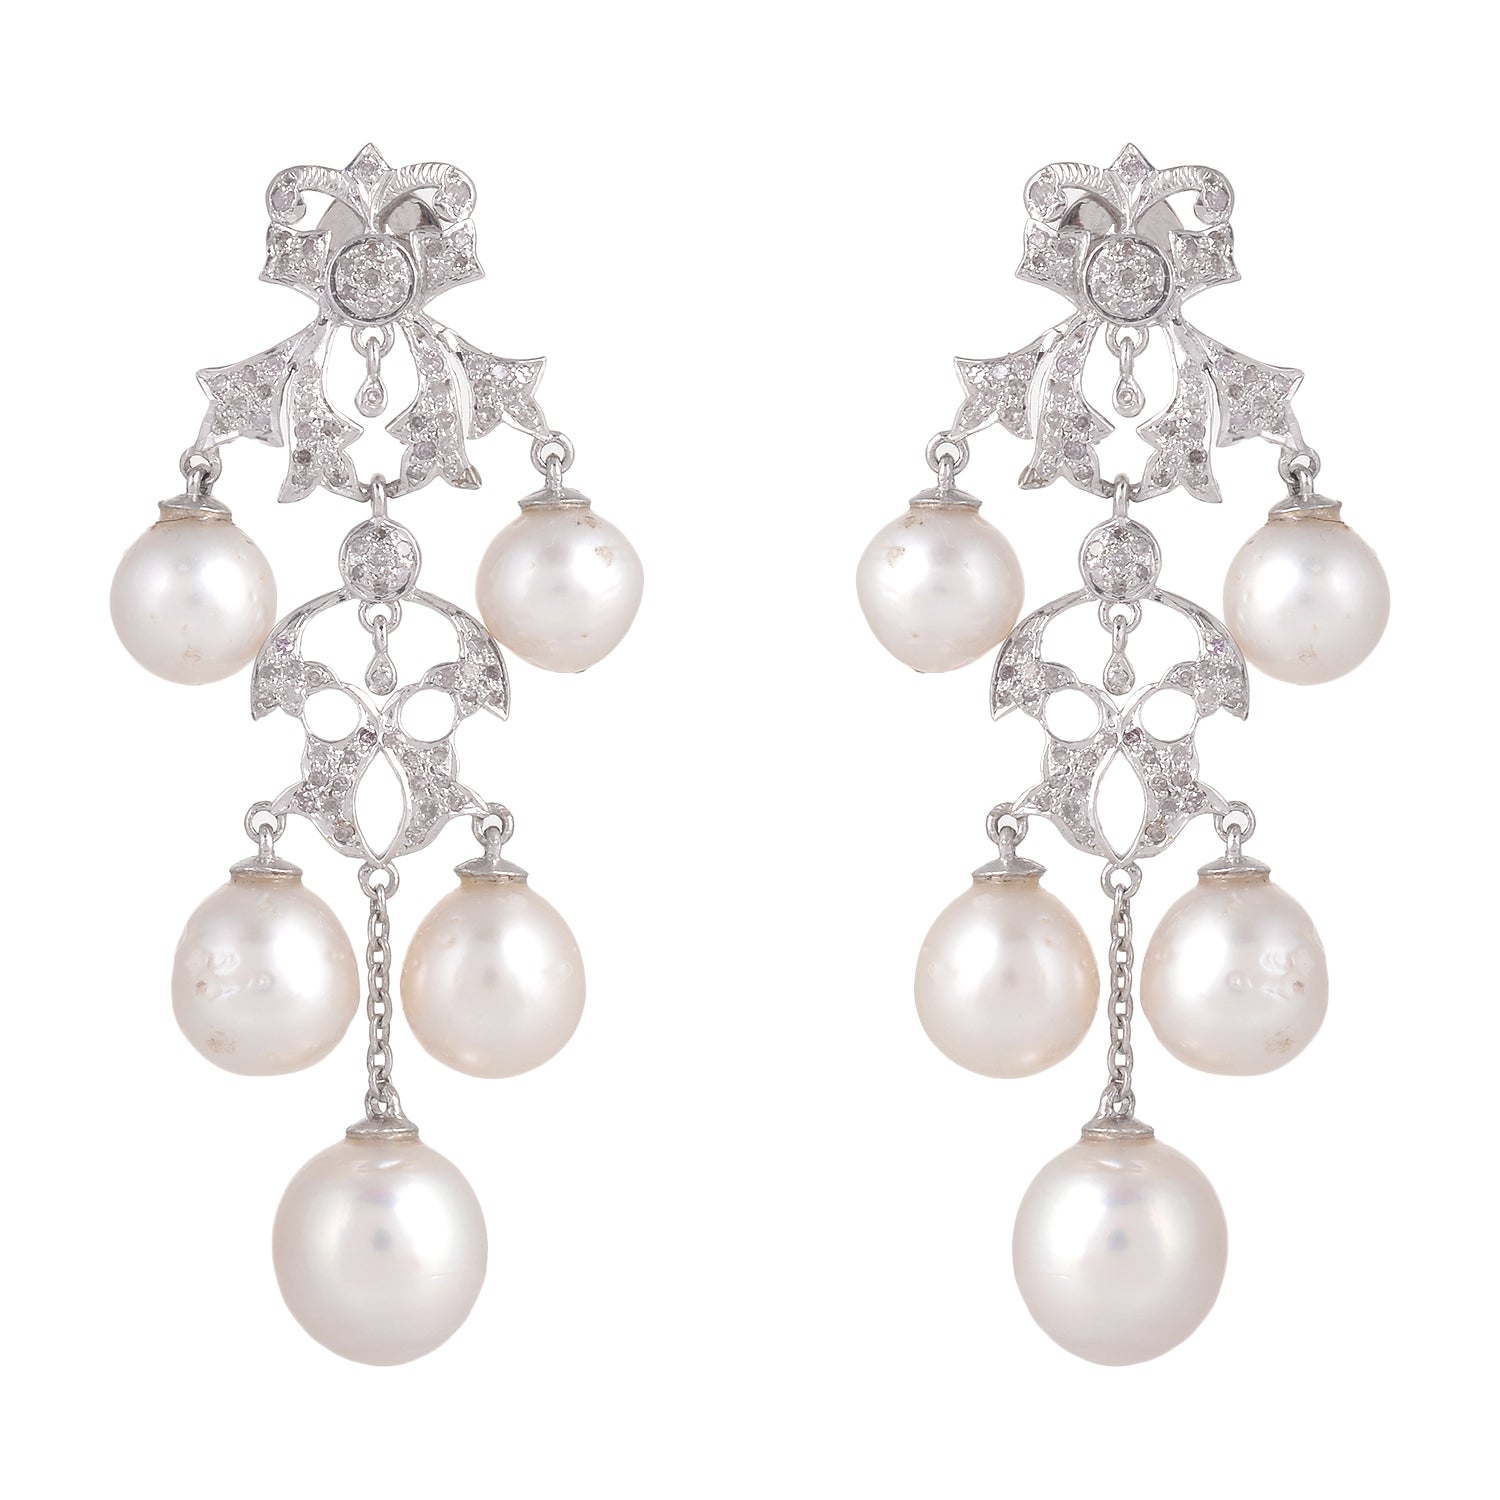 925 Silver Pearl Earrings